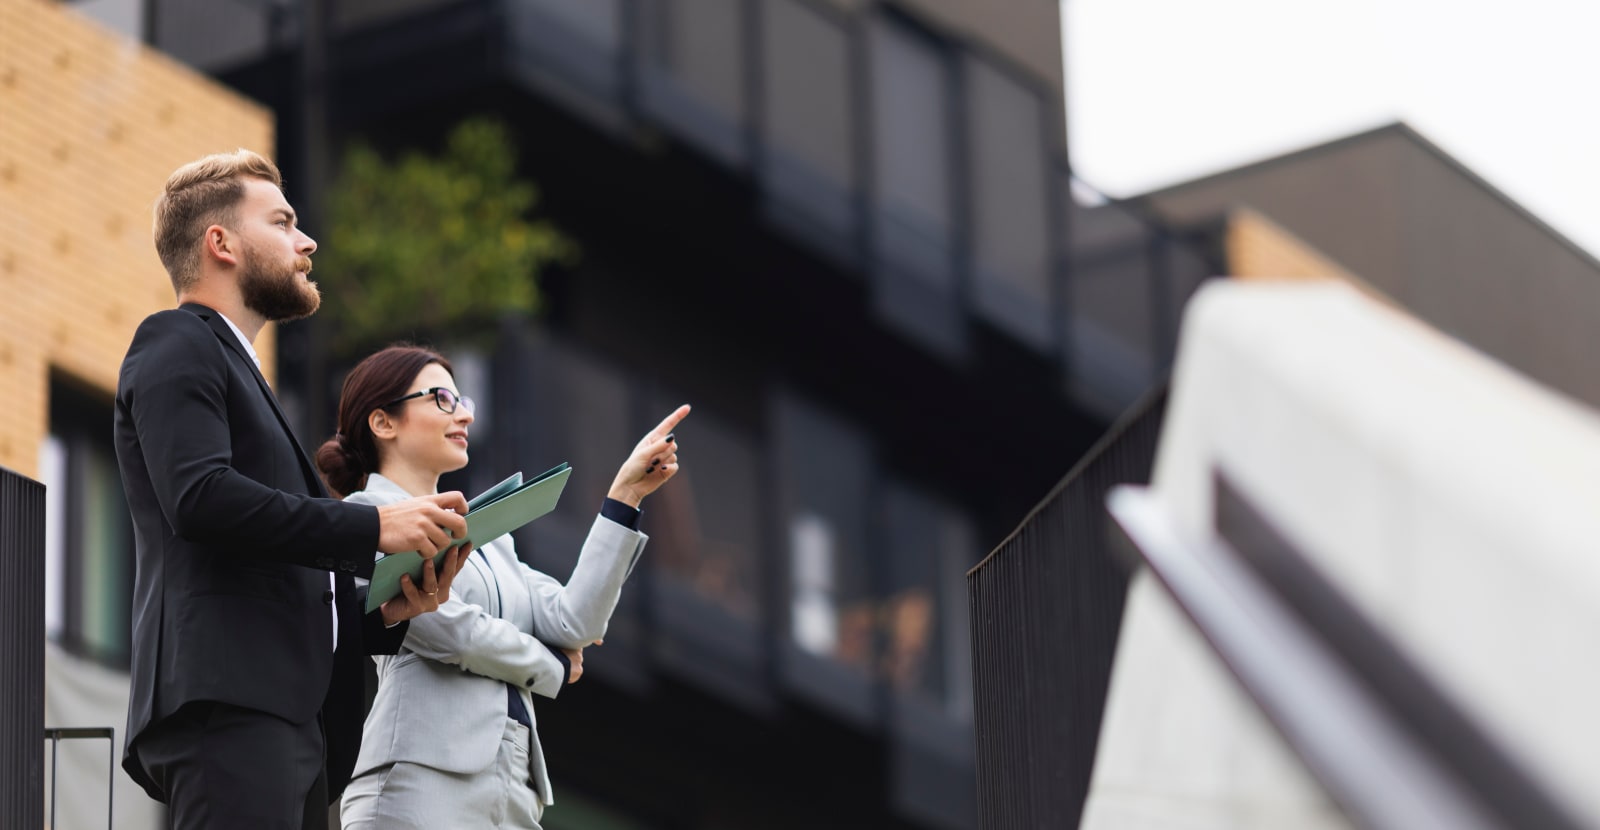 Un homme et une femme en tenue d’affaires se tiennent devant un bâtiment, la femme montre quelque chose du doigt.